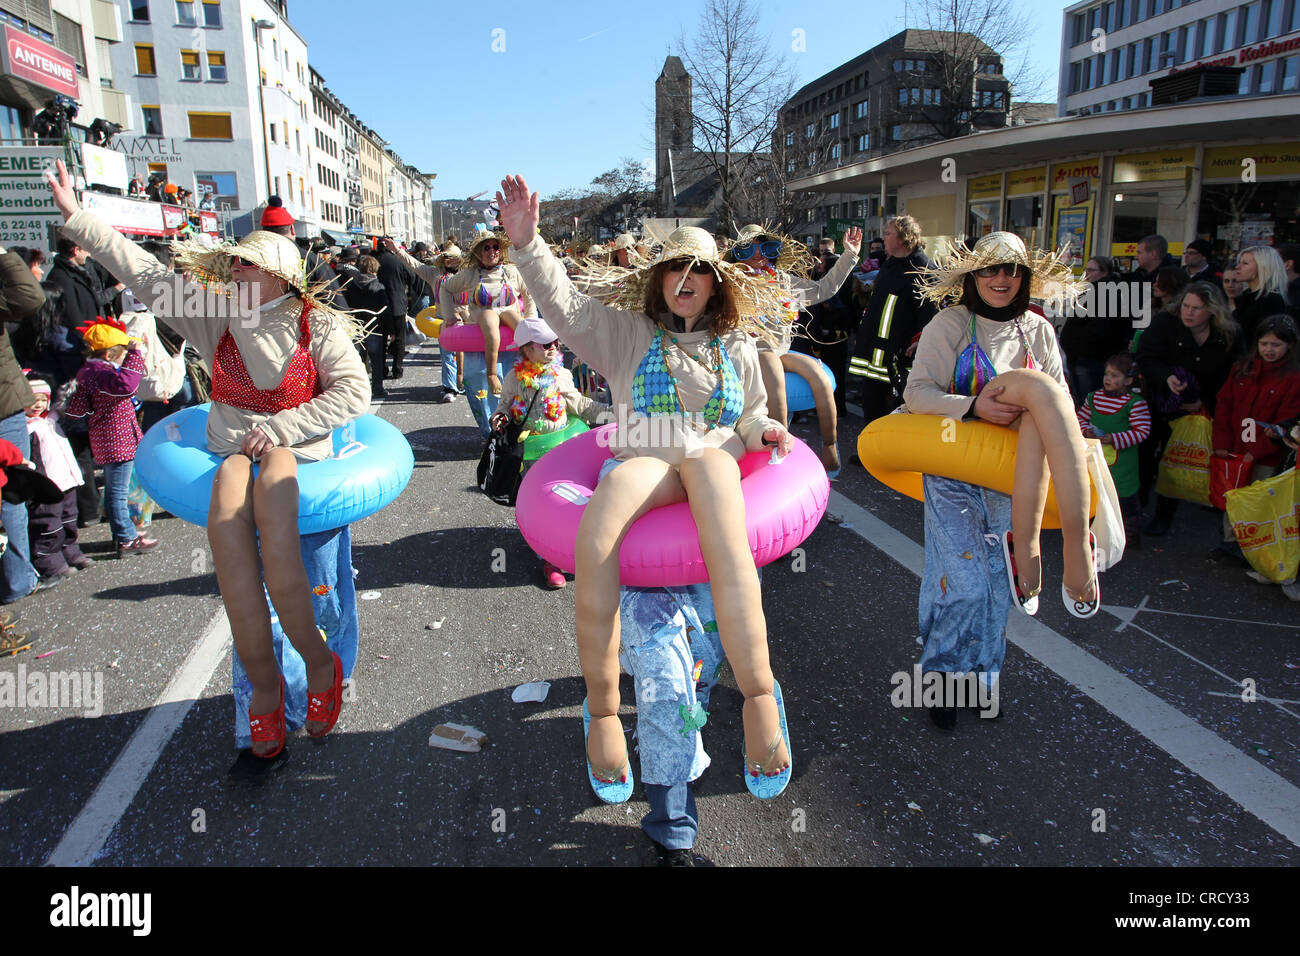 Rosenmontagszug, Carnival procession, Koblenz, Rhineland-Palatinate, Germany, Europe Stock Photo